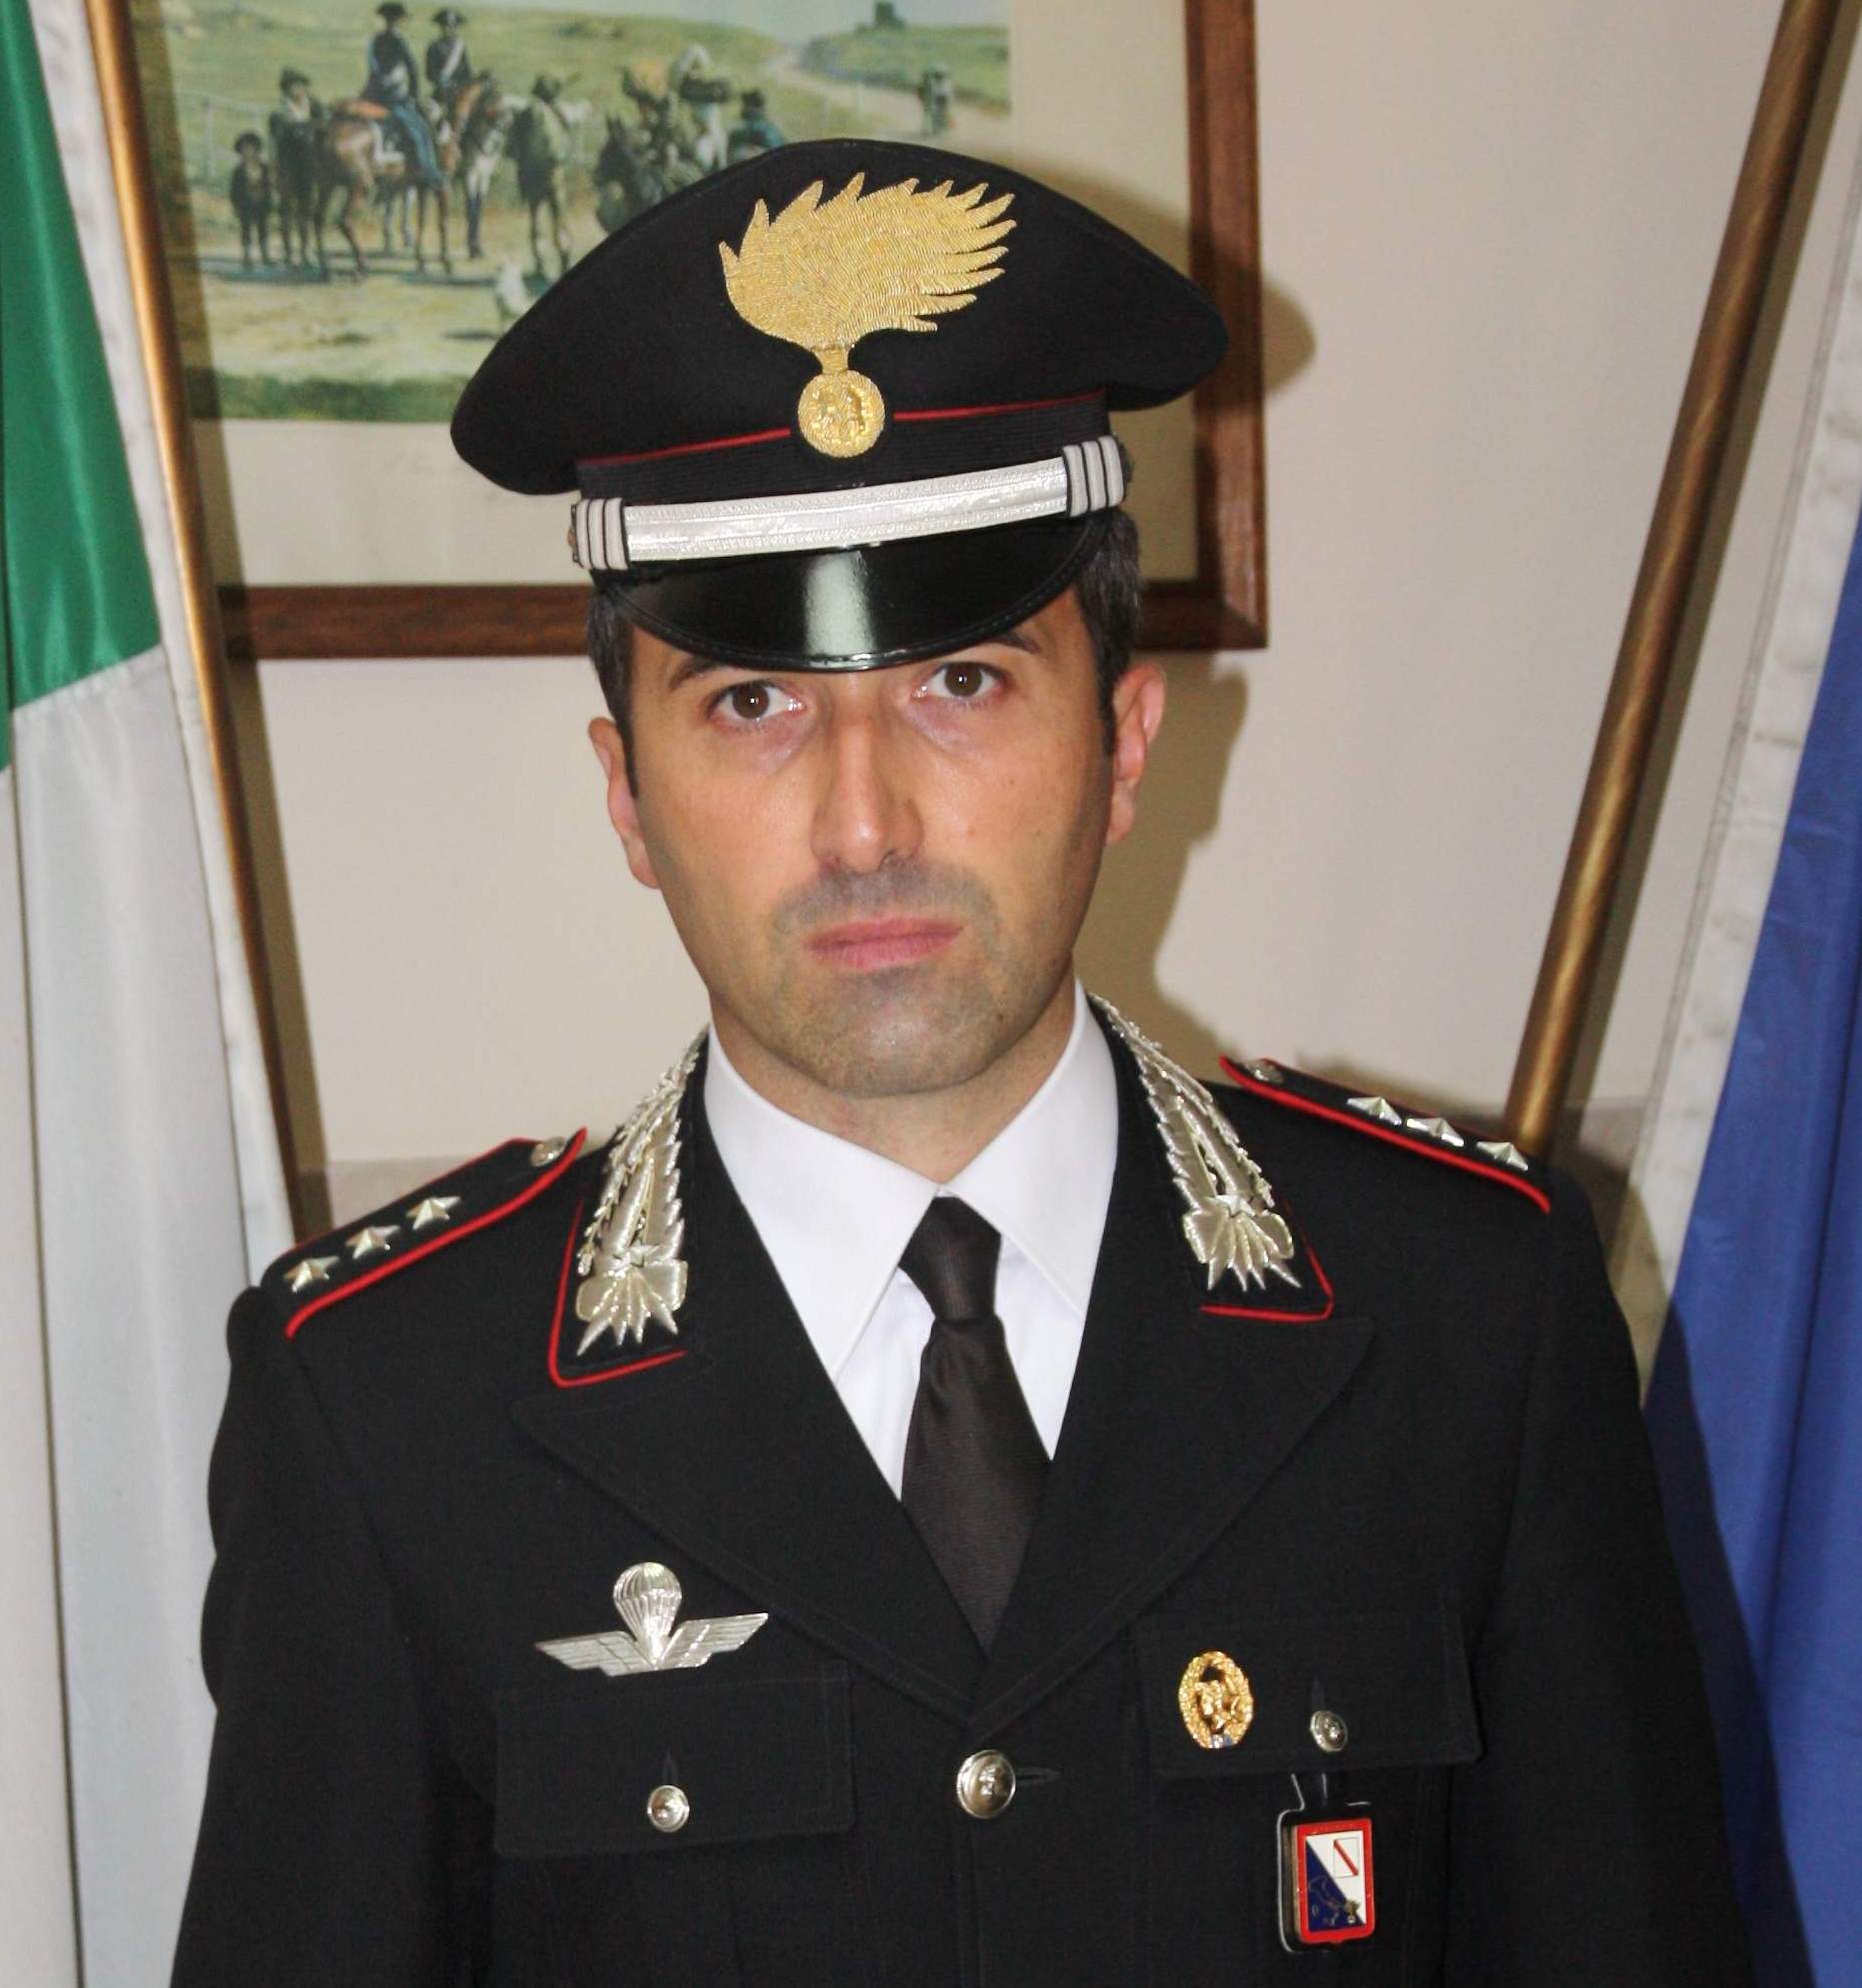 Baiano| Il capitano Antonazzo Panico nuovo comandante della Compagnia carabinieri